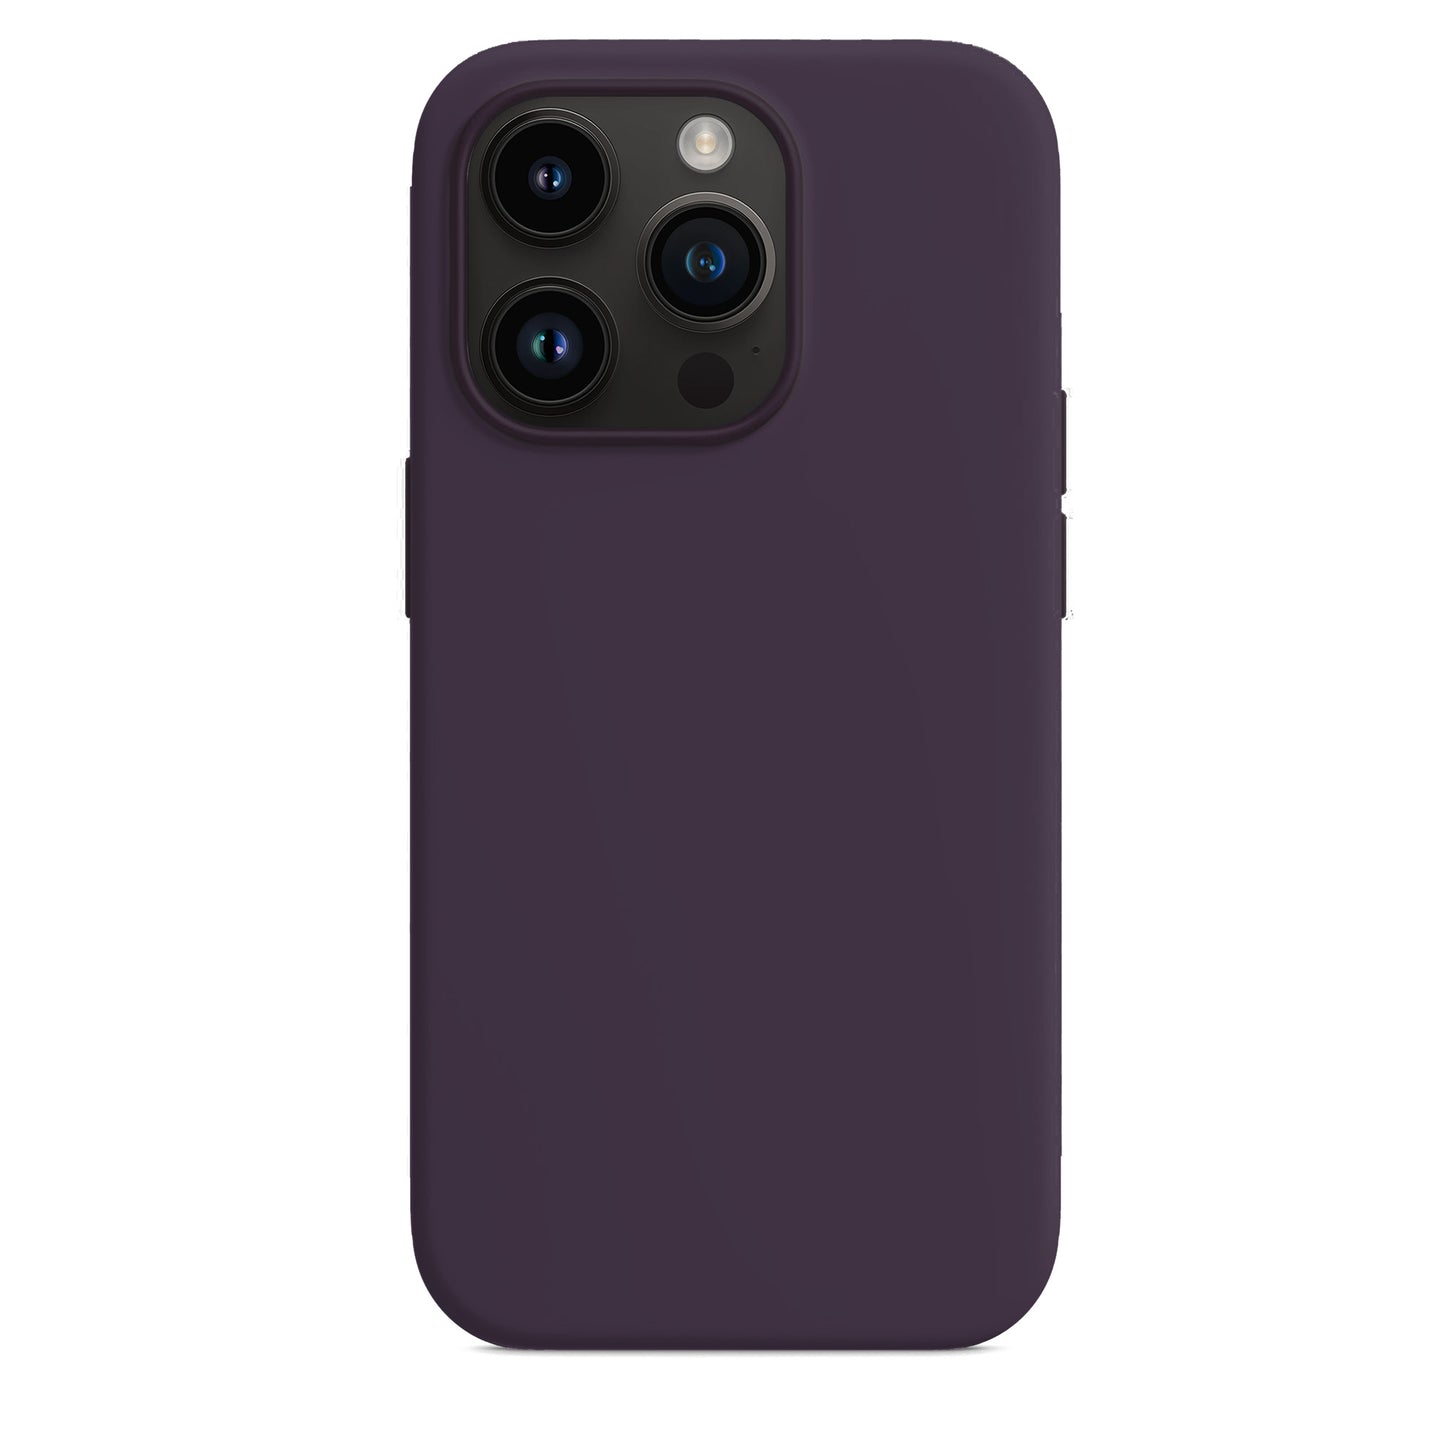 Elderberry Silikon Hülle für iPhone